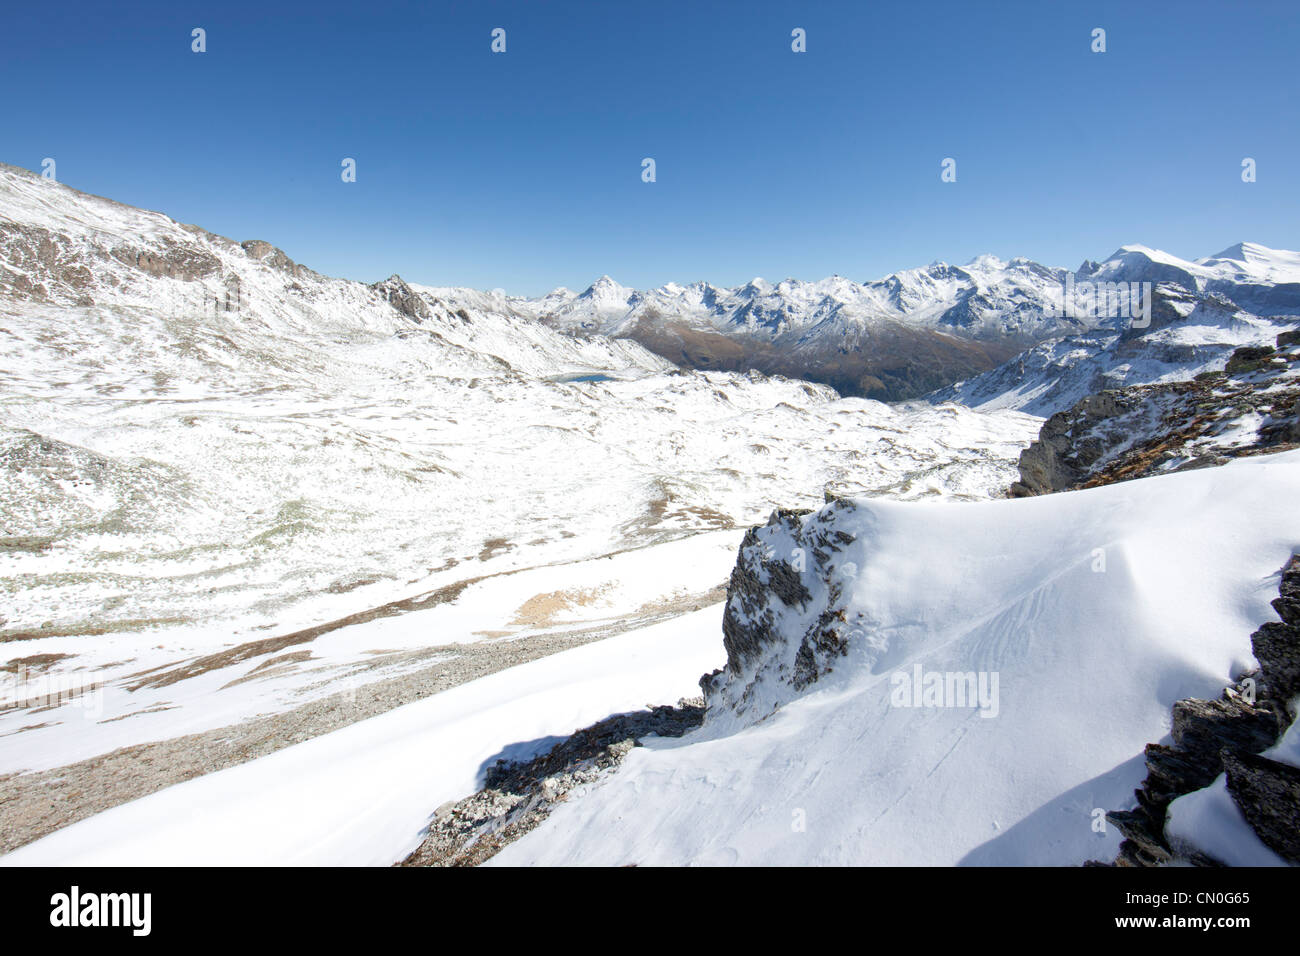 La Suisse, Haute route, vue depuis le sommet de la col du Meidpass (2709m) à l'Est avec enneigés des Alpes. Banque D'Images